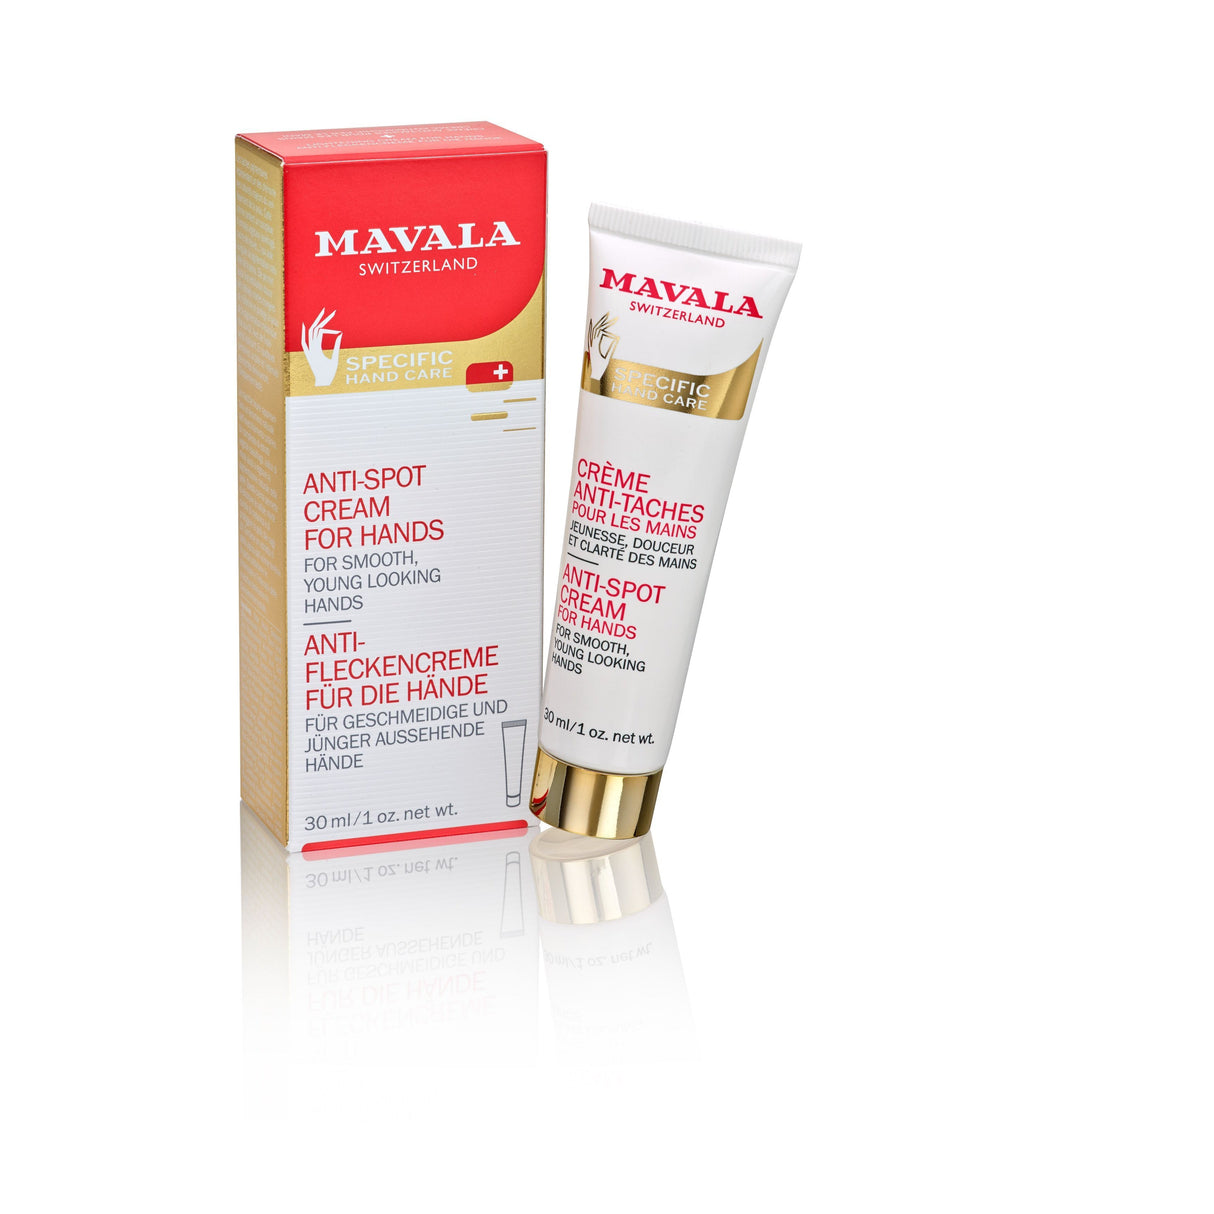 Specific Hand Care Anti-Spot Cream For Hands-Mavala